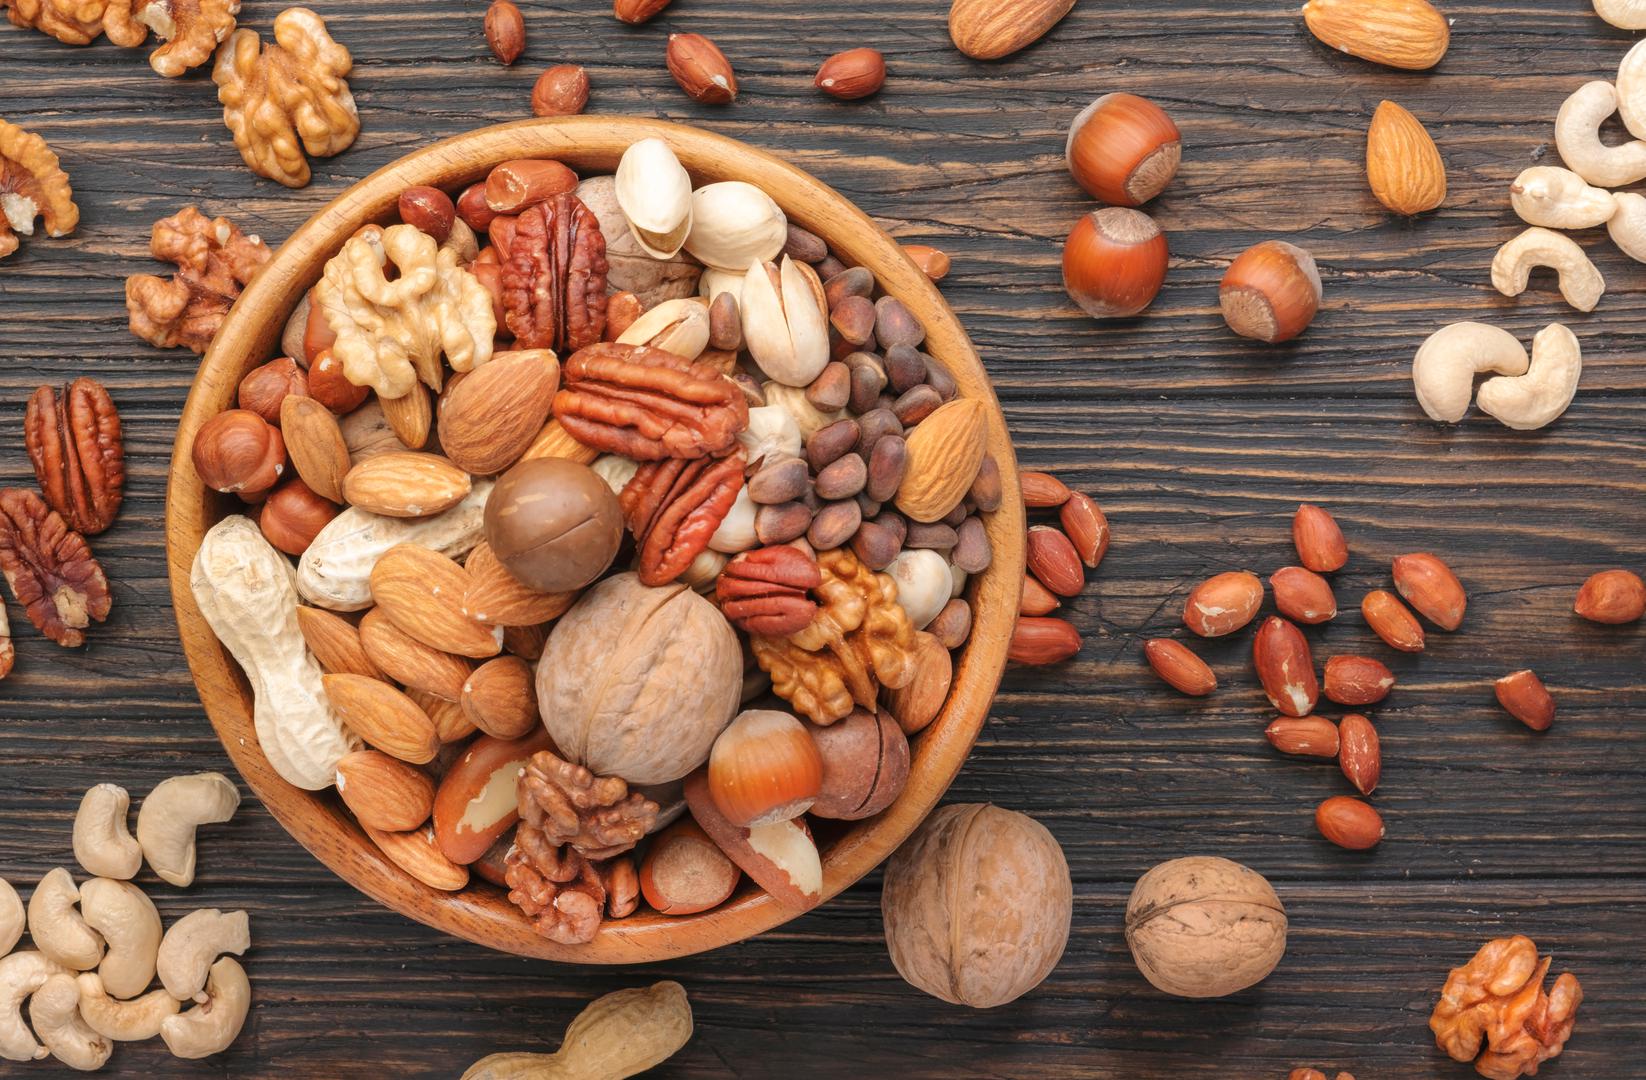 Orašasti plodovi i sjemenke: Orašasti plodovi i sjemenke prepuni su proteina i vlakana, rekla je dr. Florence Comite, osnivačica Comite centra za preciznu medicinu i dugovječnost u New Yorku. Bademi, brazilski oraščići, sjemenke suncokreta, sjemenke bundeve, indijski oraščići i orasi izvrsna su hrana koja može pomoći u smanjenju visceralne masnoće i poboljšati osjetljivost na inzulin. 'Orasi su mi među najdražima jer su također dobar izvor biljnih omega-3 masnih kiselina, zdravih masti koje dobivate iz masne ribe', rekla je Comite.